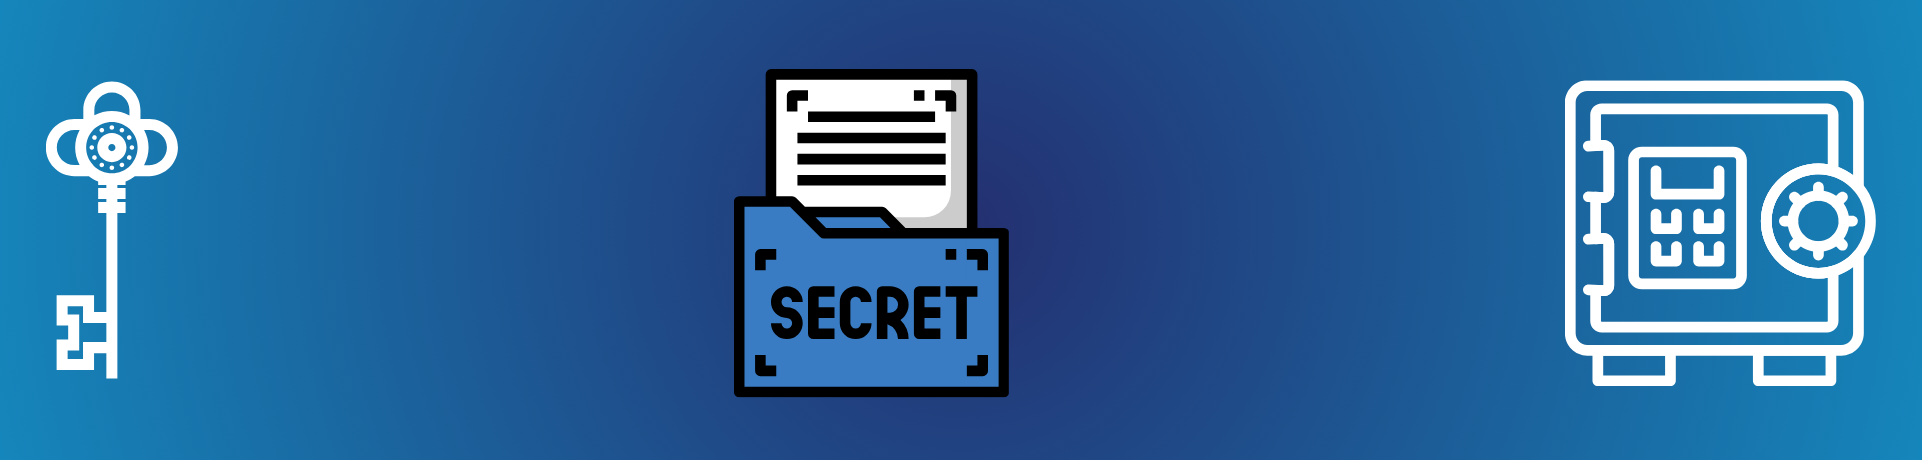 La gestion des secrets avec Azure Key Vault Image